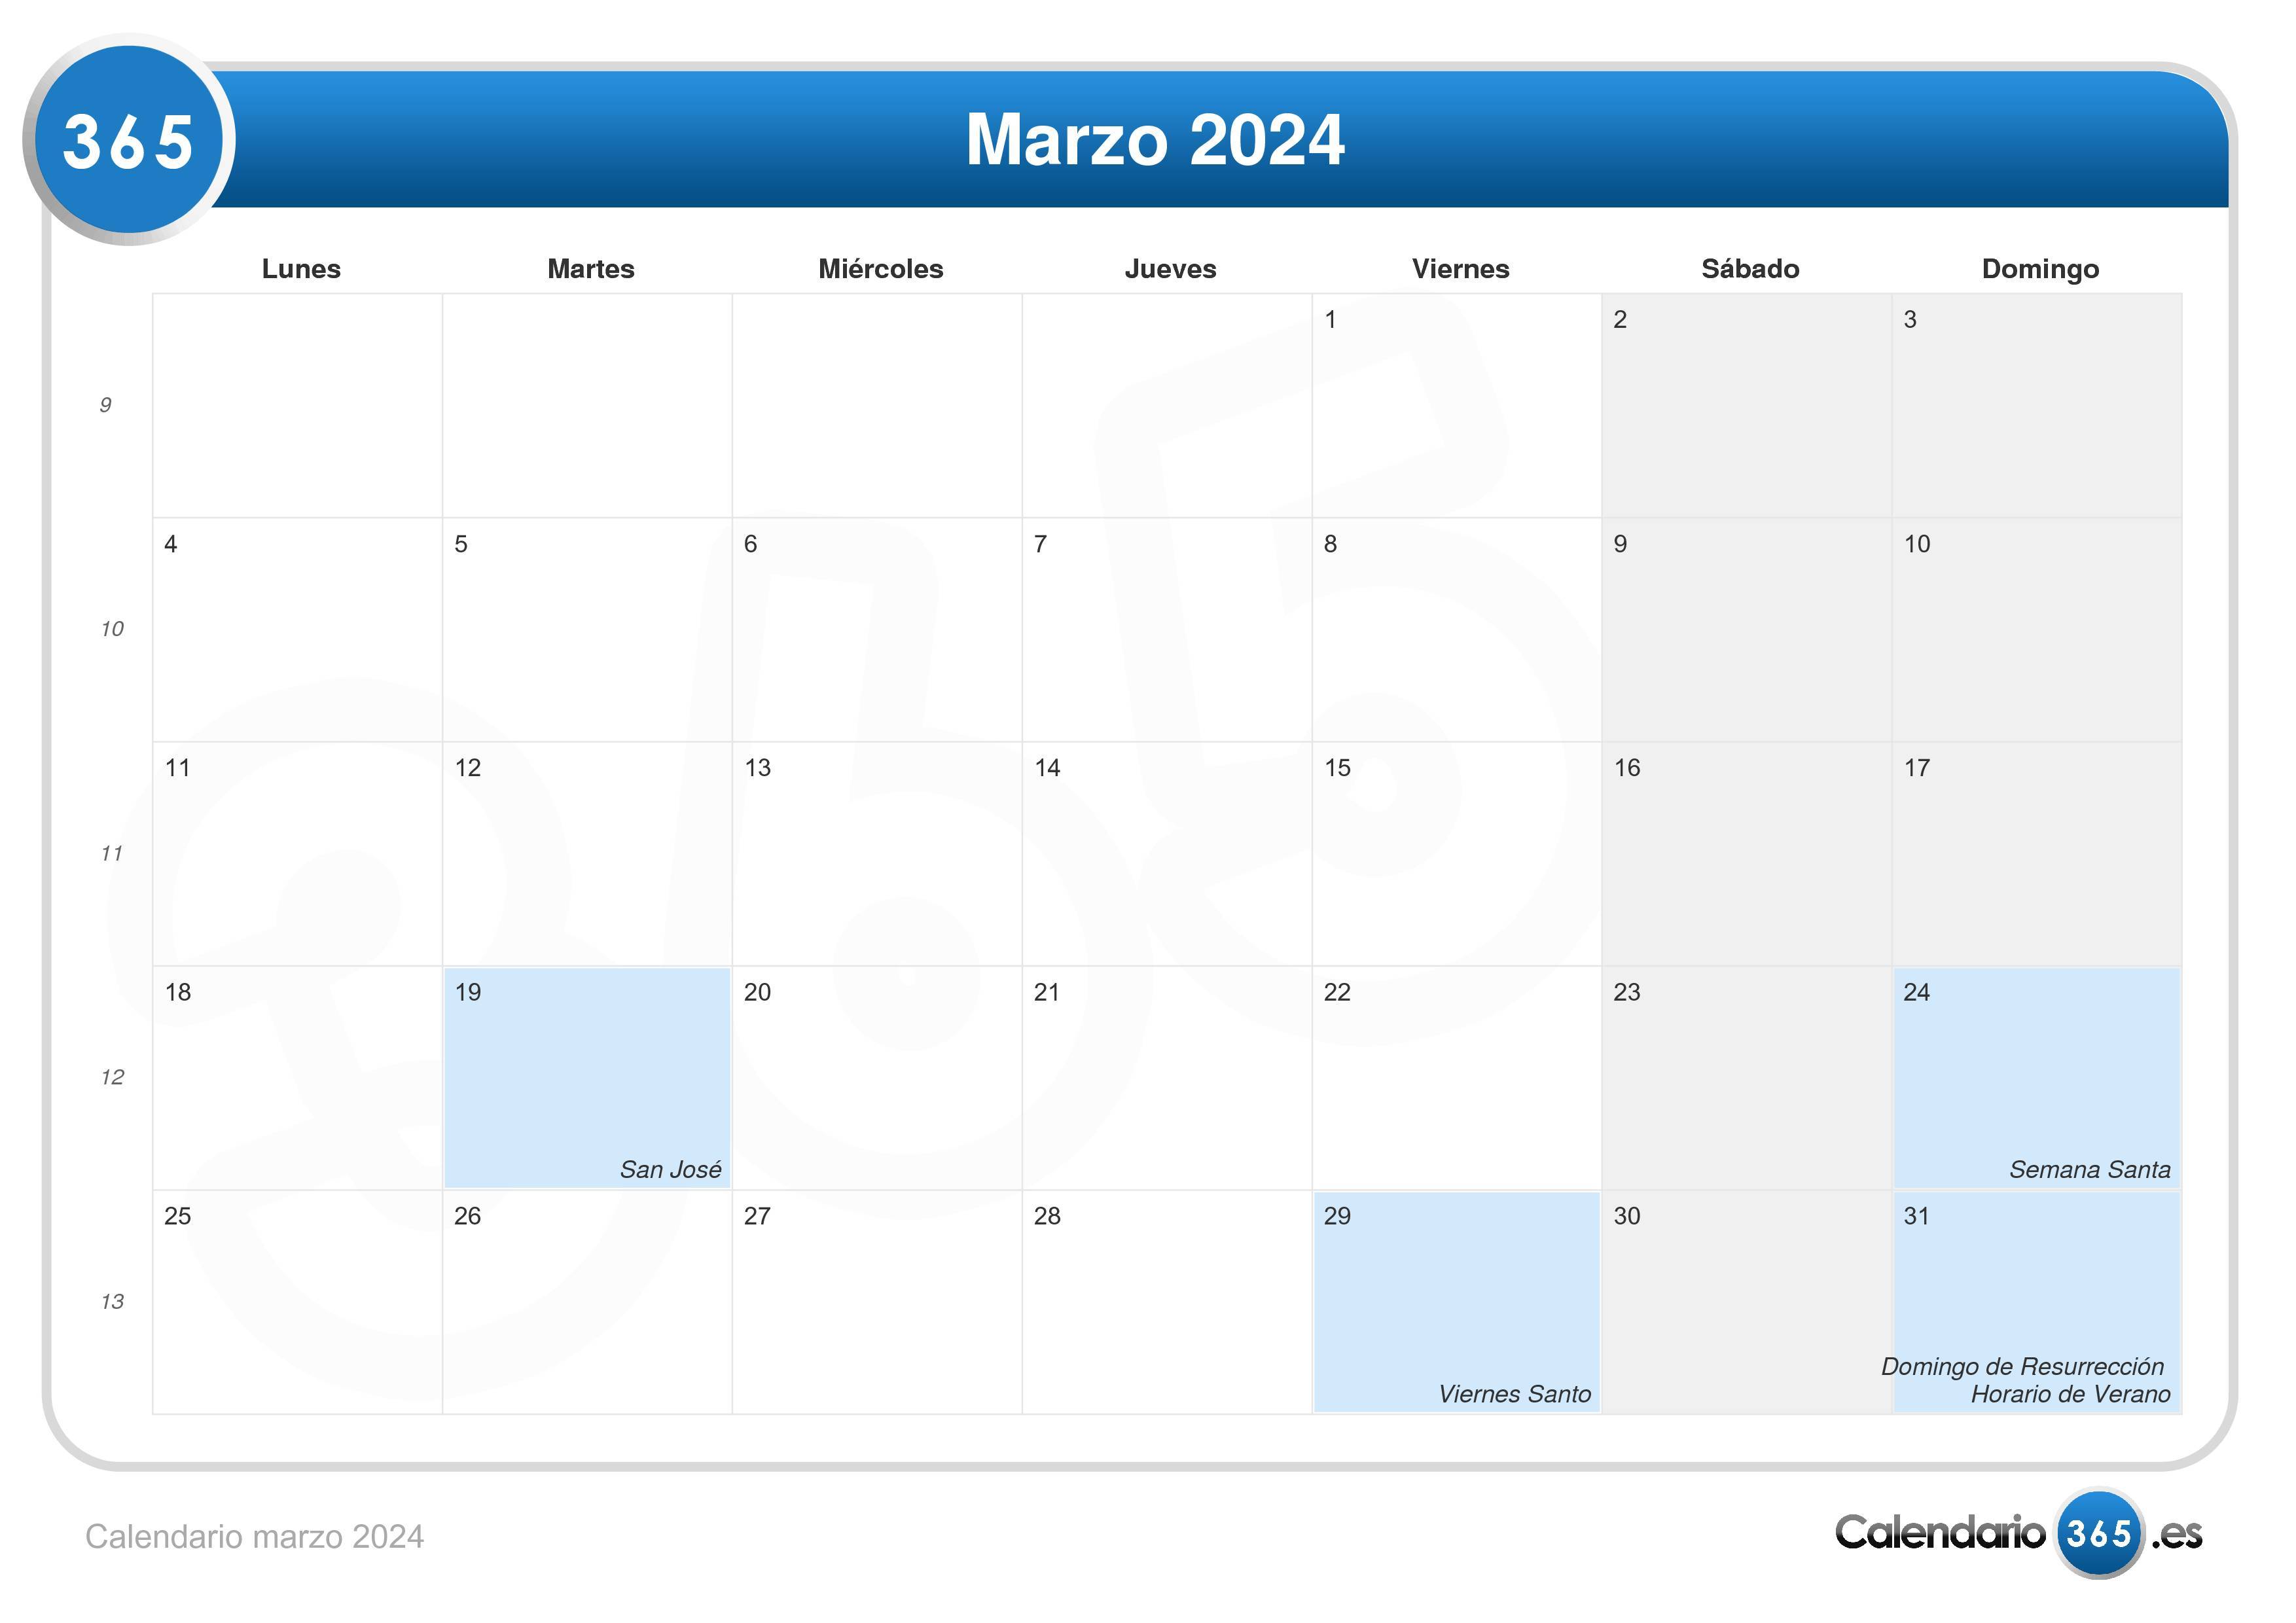 Almanaque Marzo 2024 Calendario marzo 2024